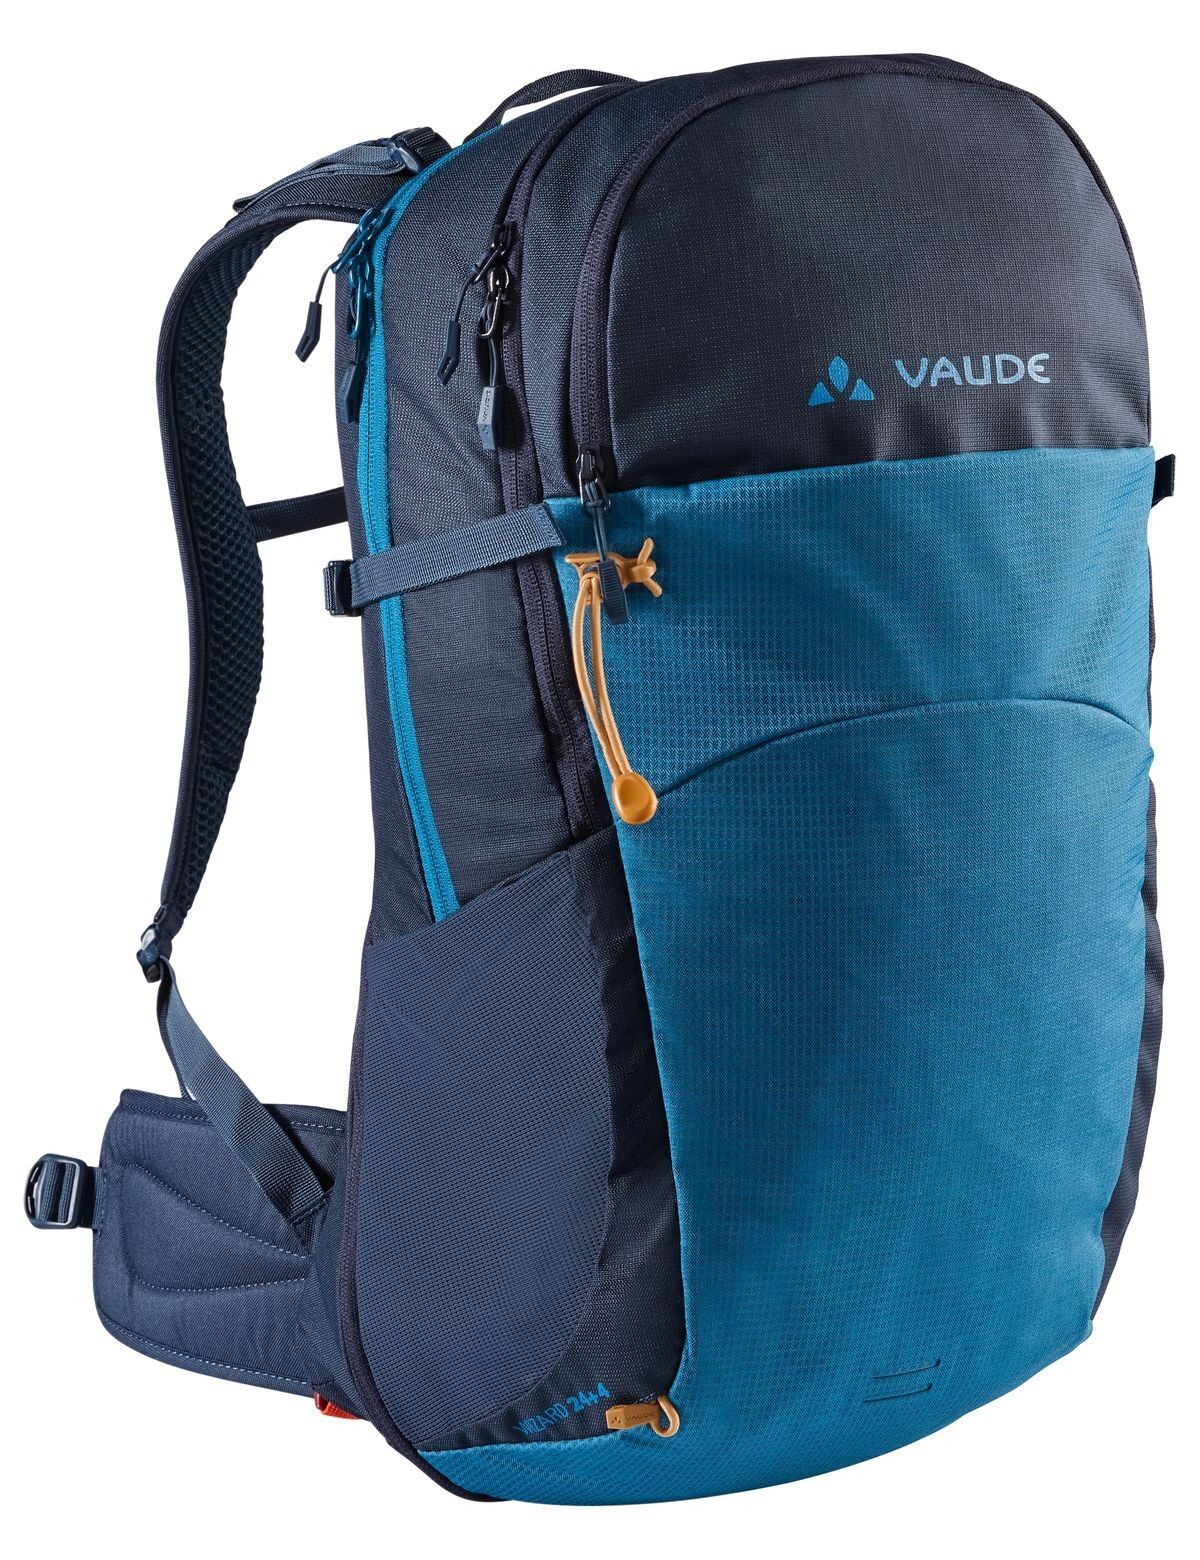 Vaude Wizard 24+4 - Walking backpack